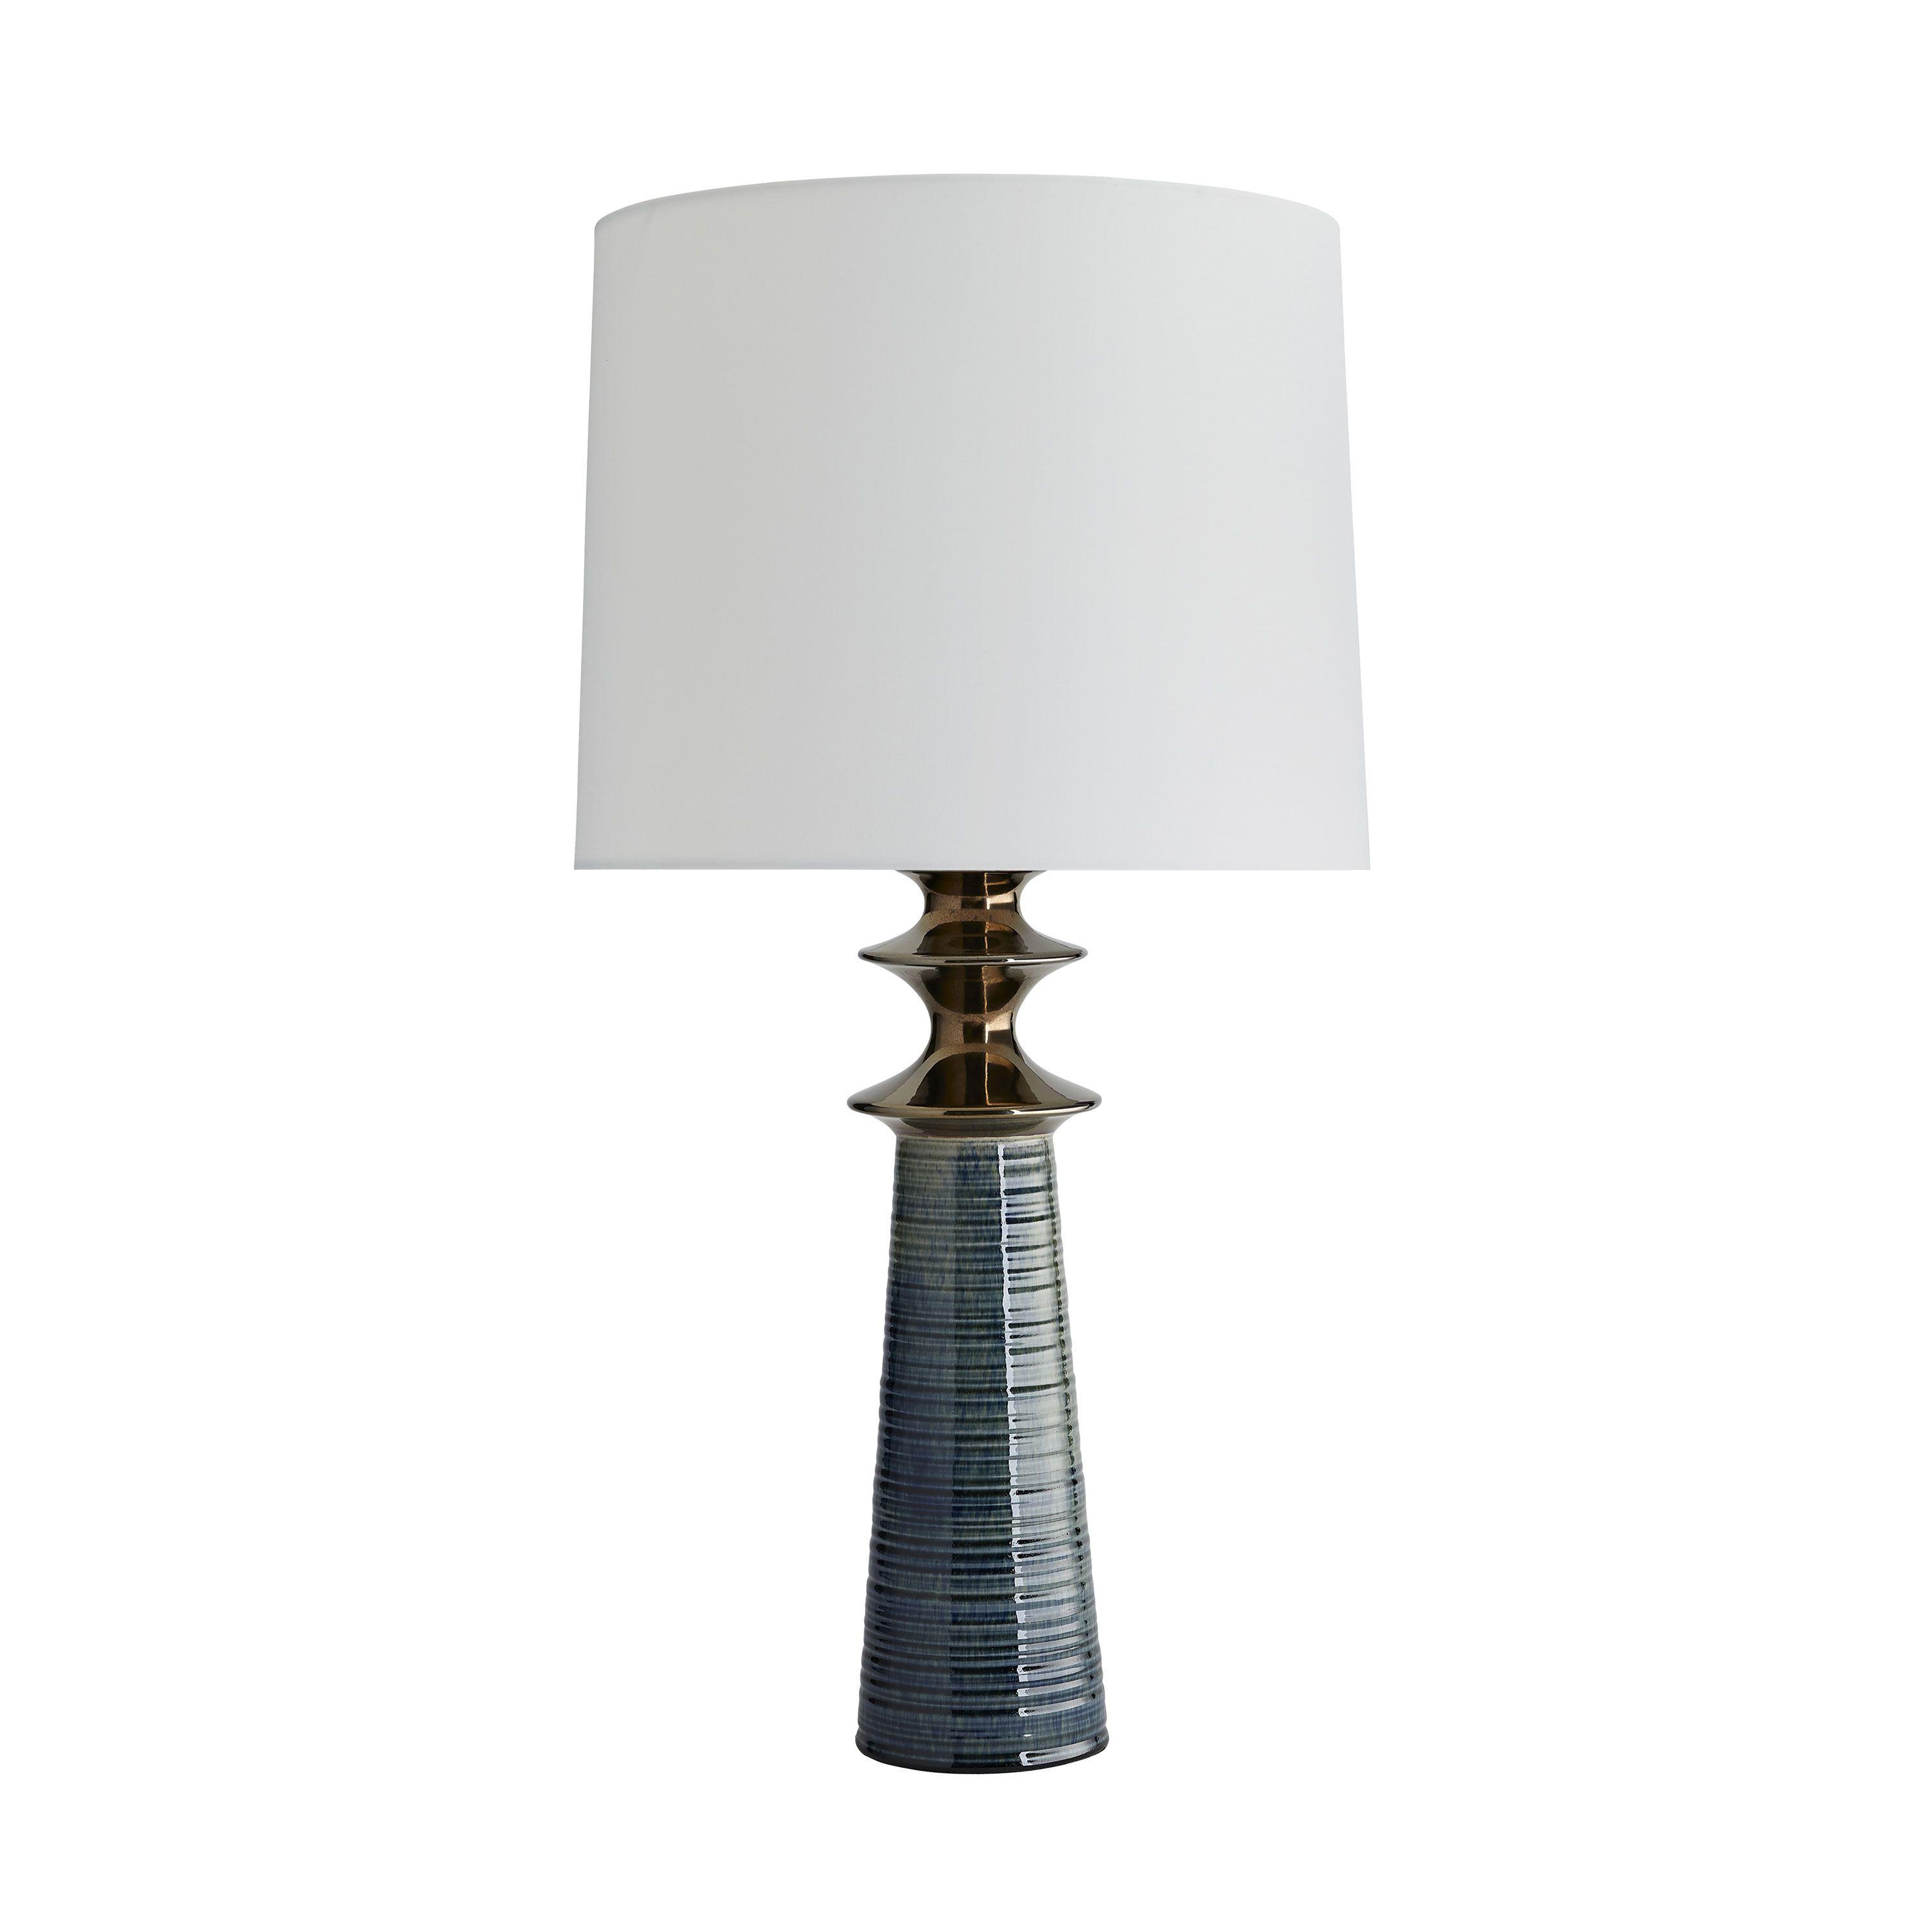 Купить Настольная лампа Albright Lamp в интернет-магазине roooms.ru